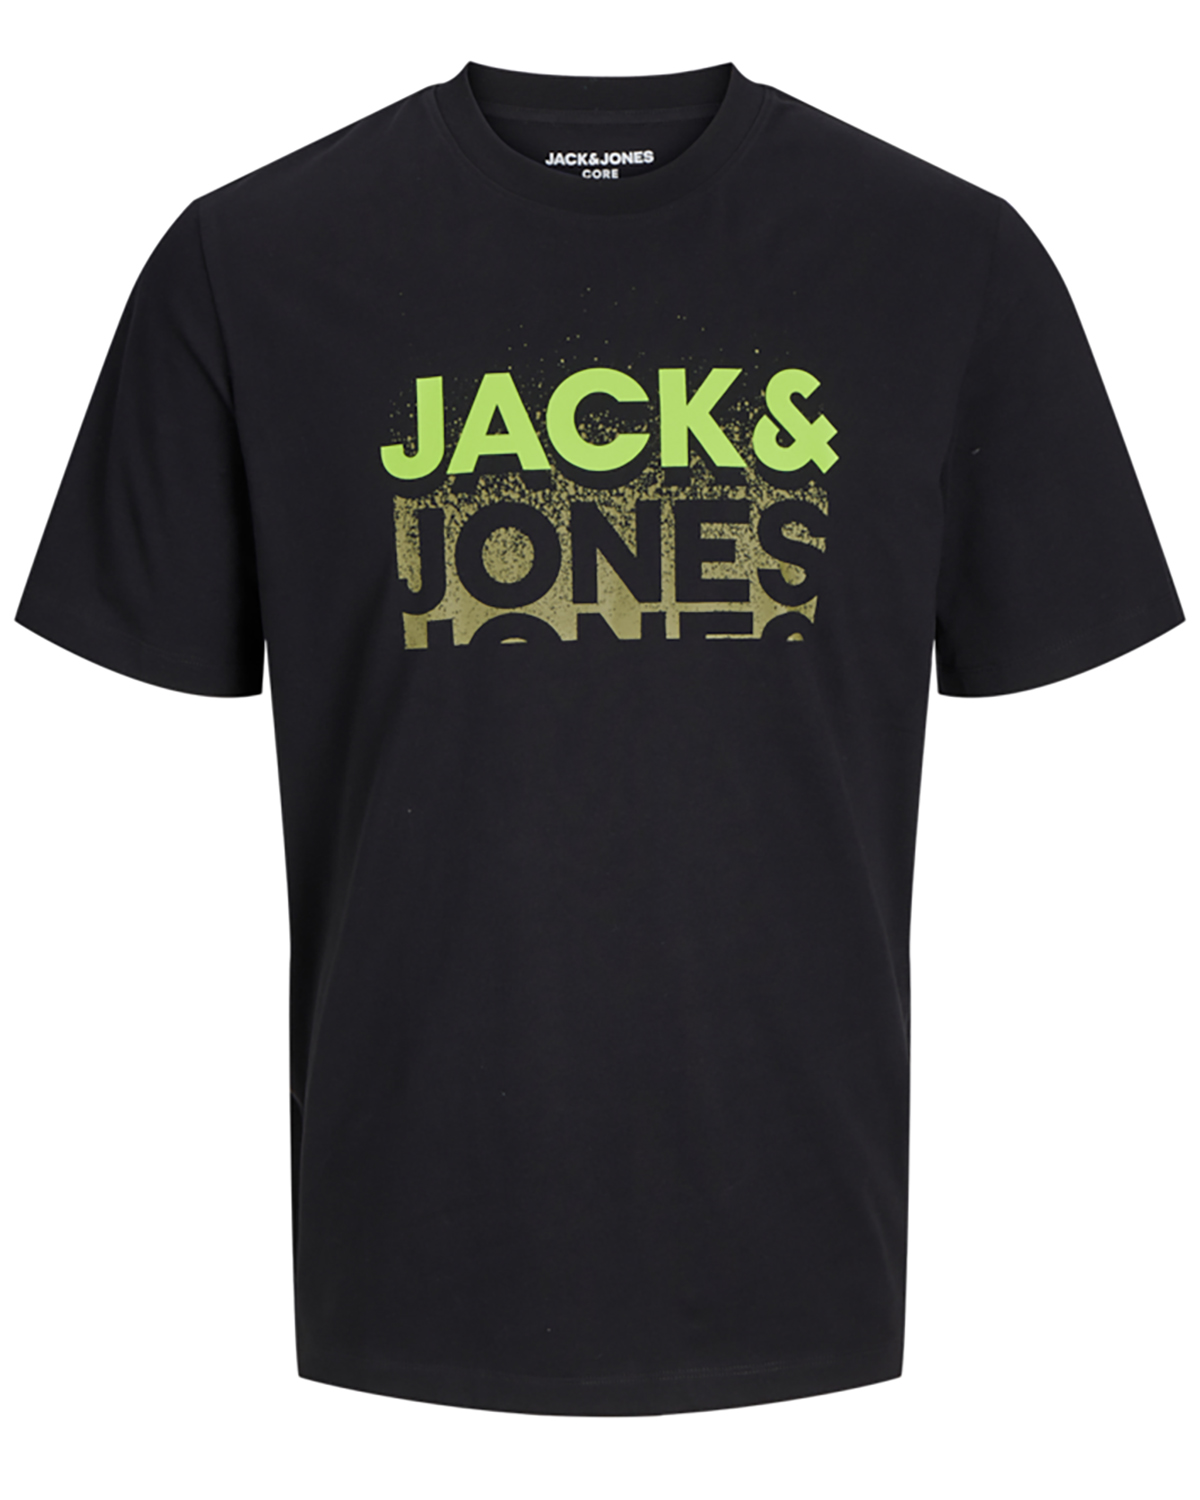 Billede af Jack & Jones t-shirt s/s, Gradient tee, sort - 176,S+,S